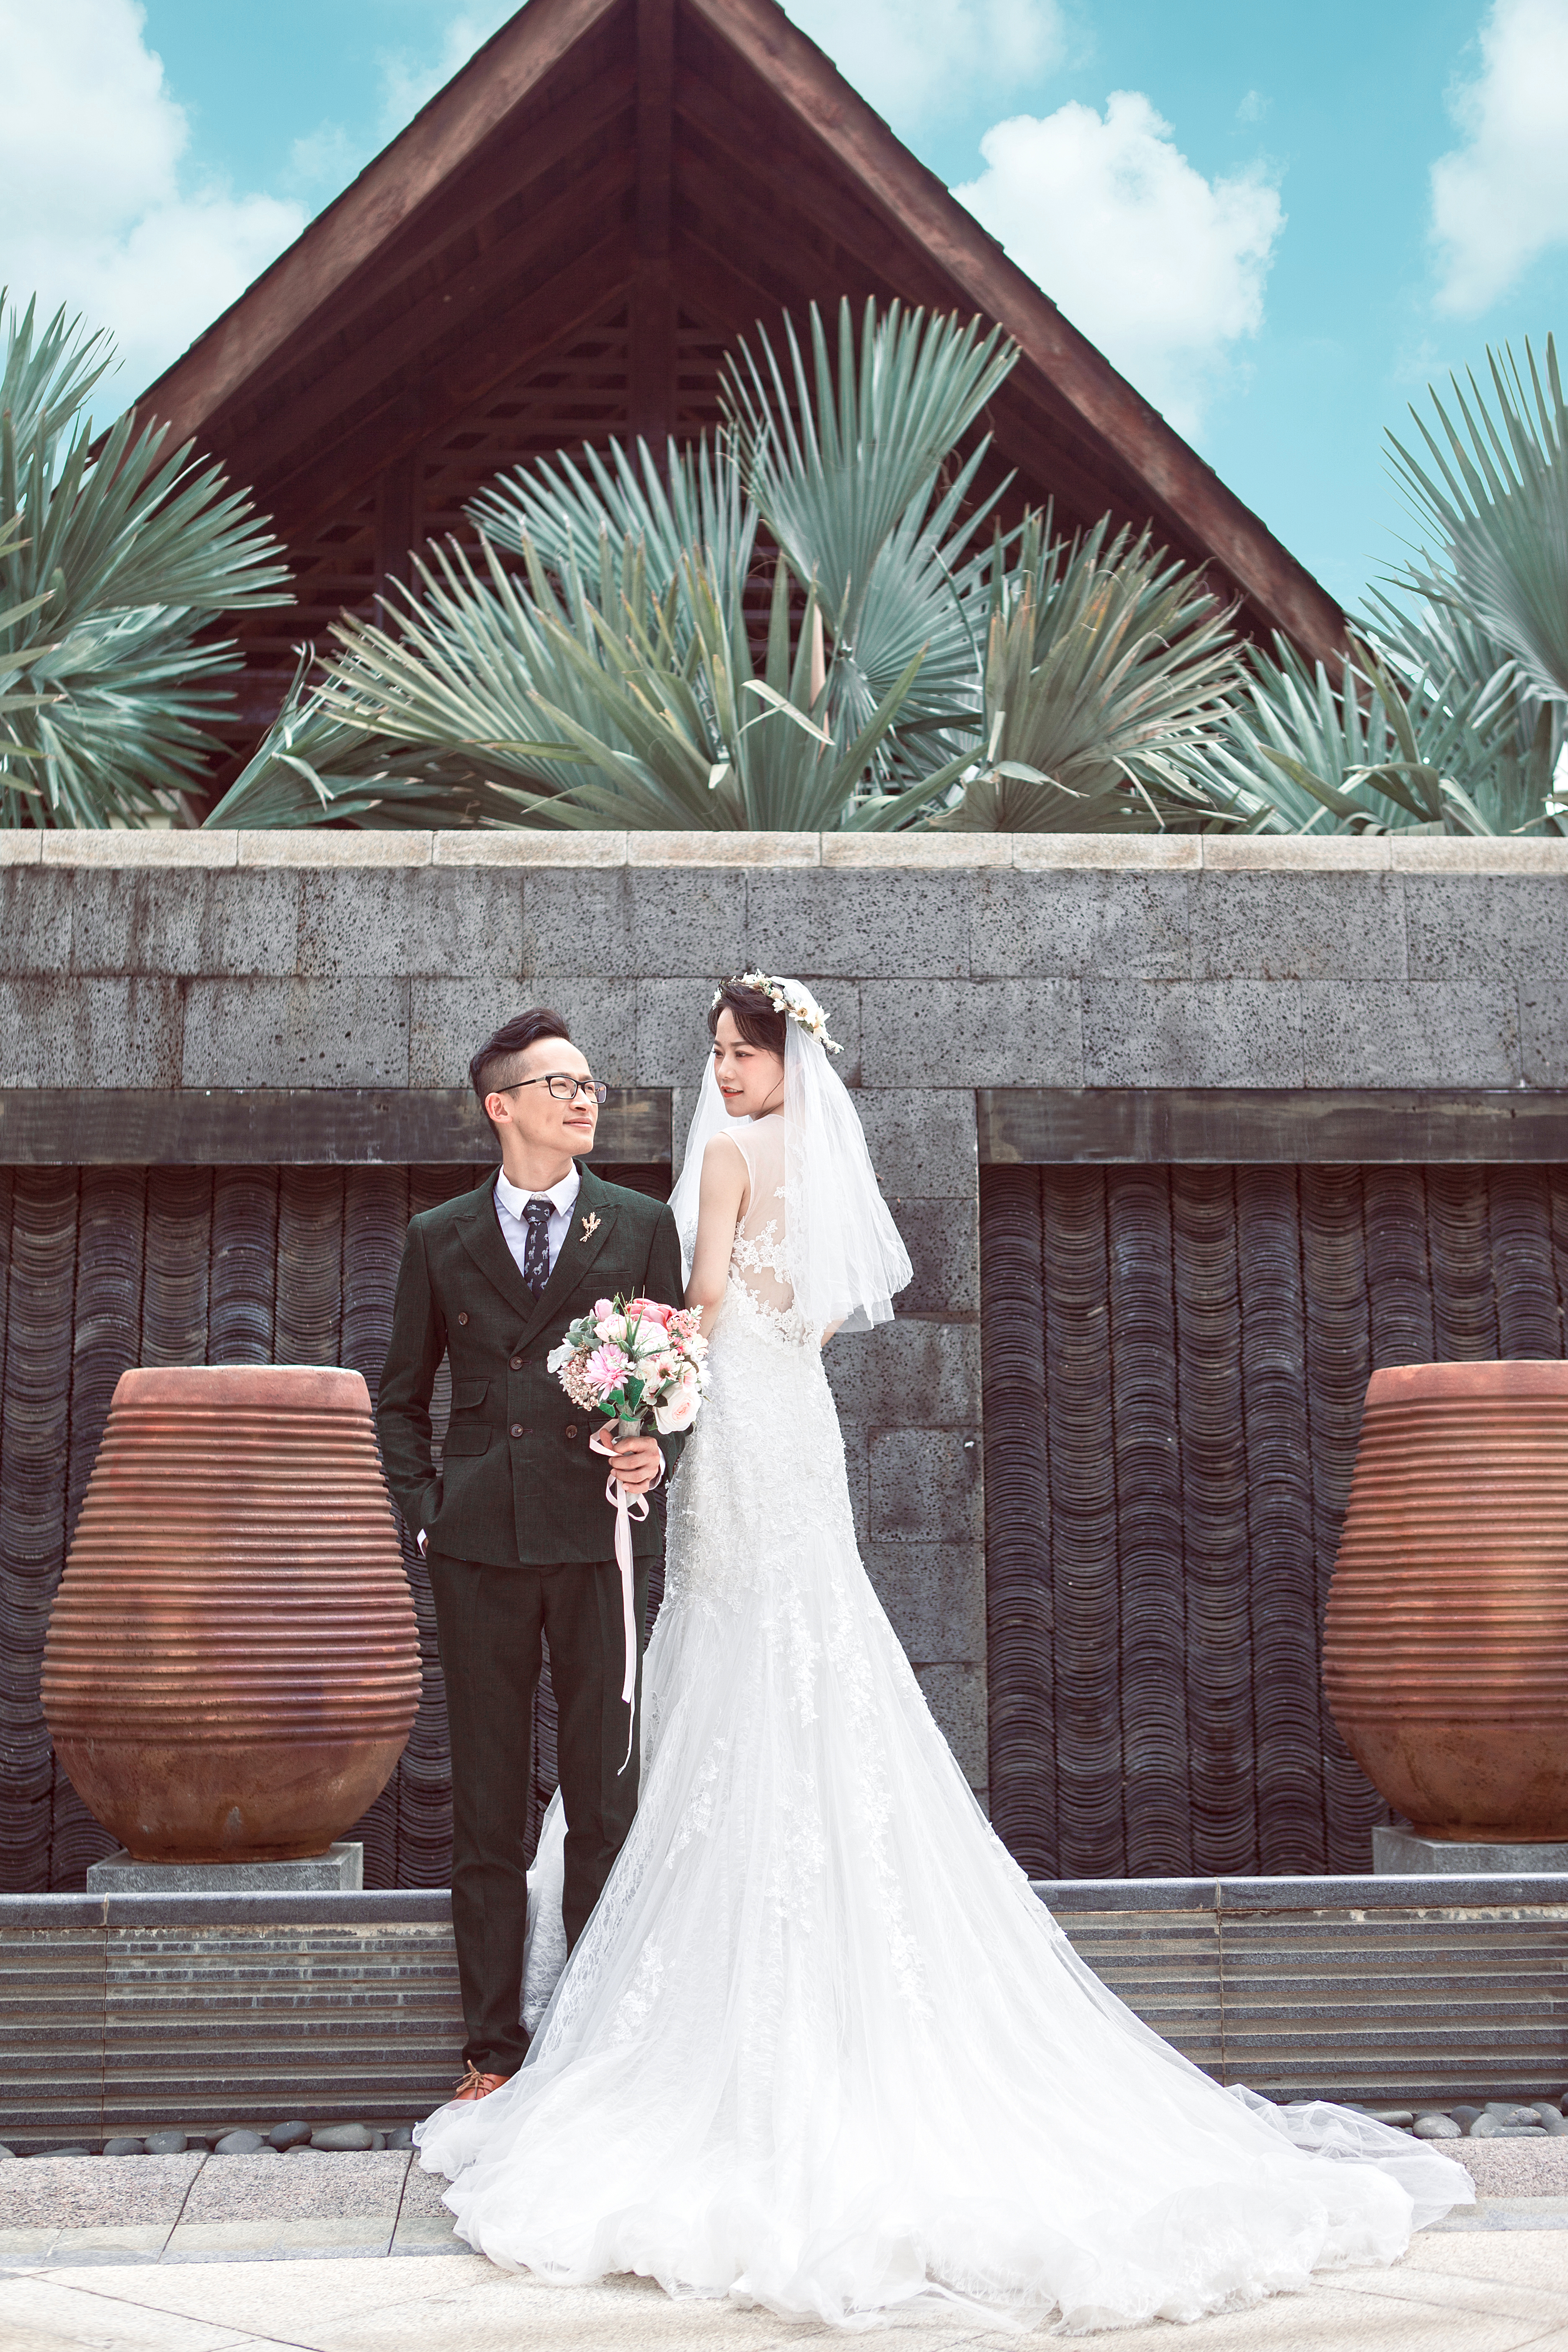 2018年9月深圳婚纱摄影,江门婚纱照,婚纱照图片